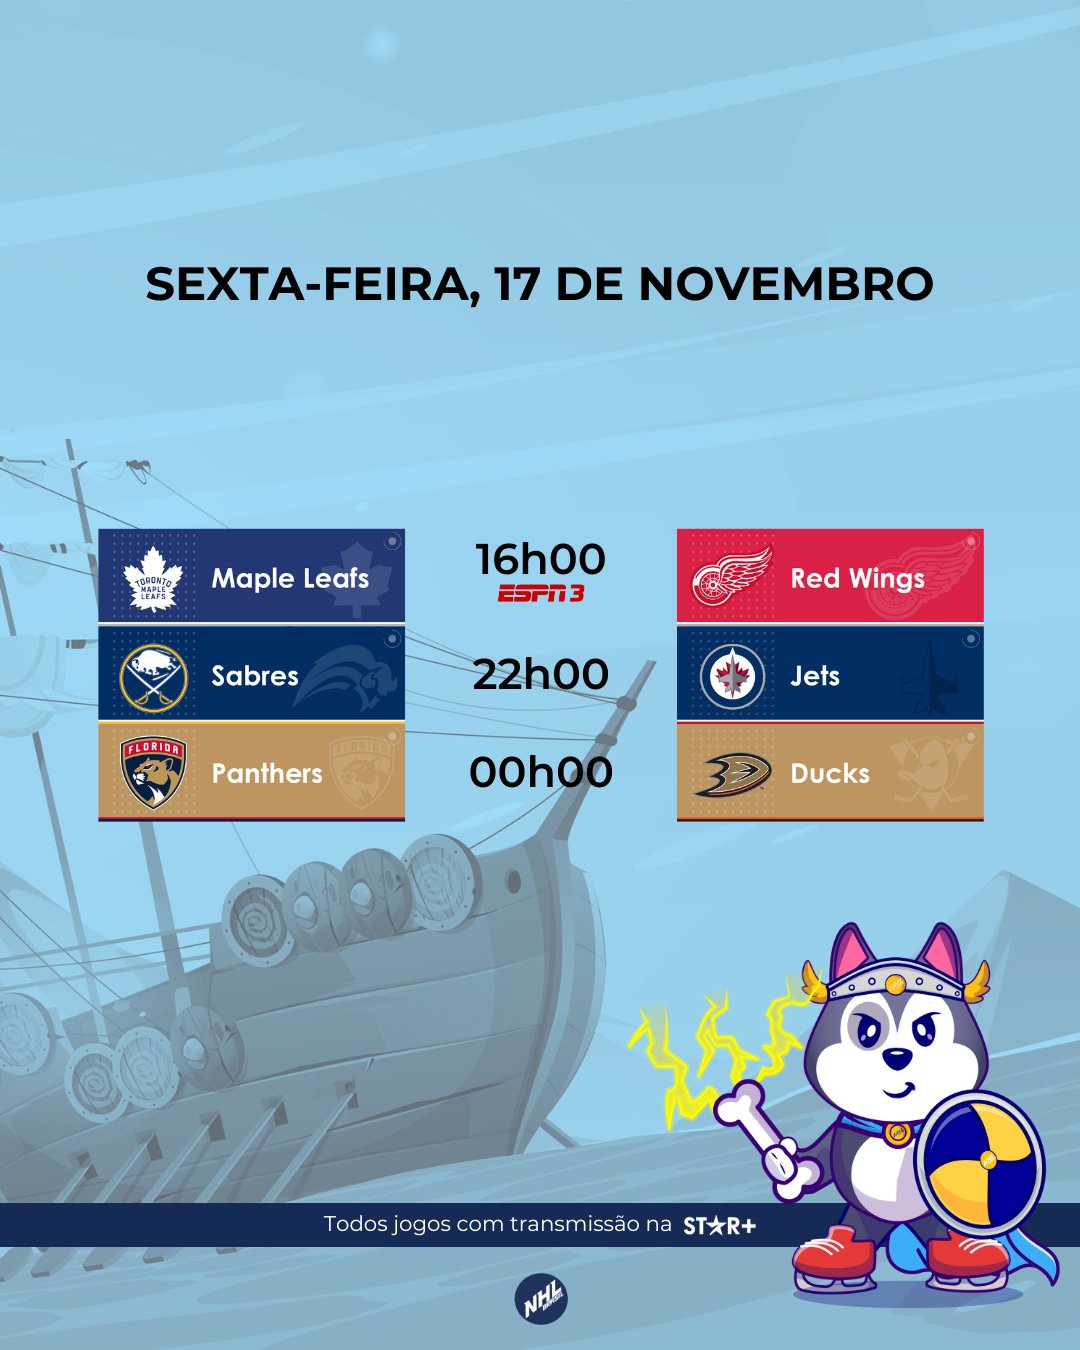 NHL Brasil (@NHLBrasil) / X